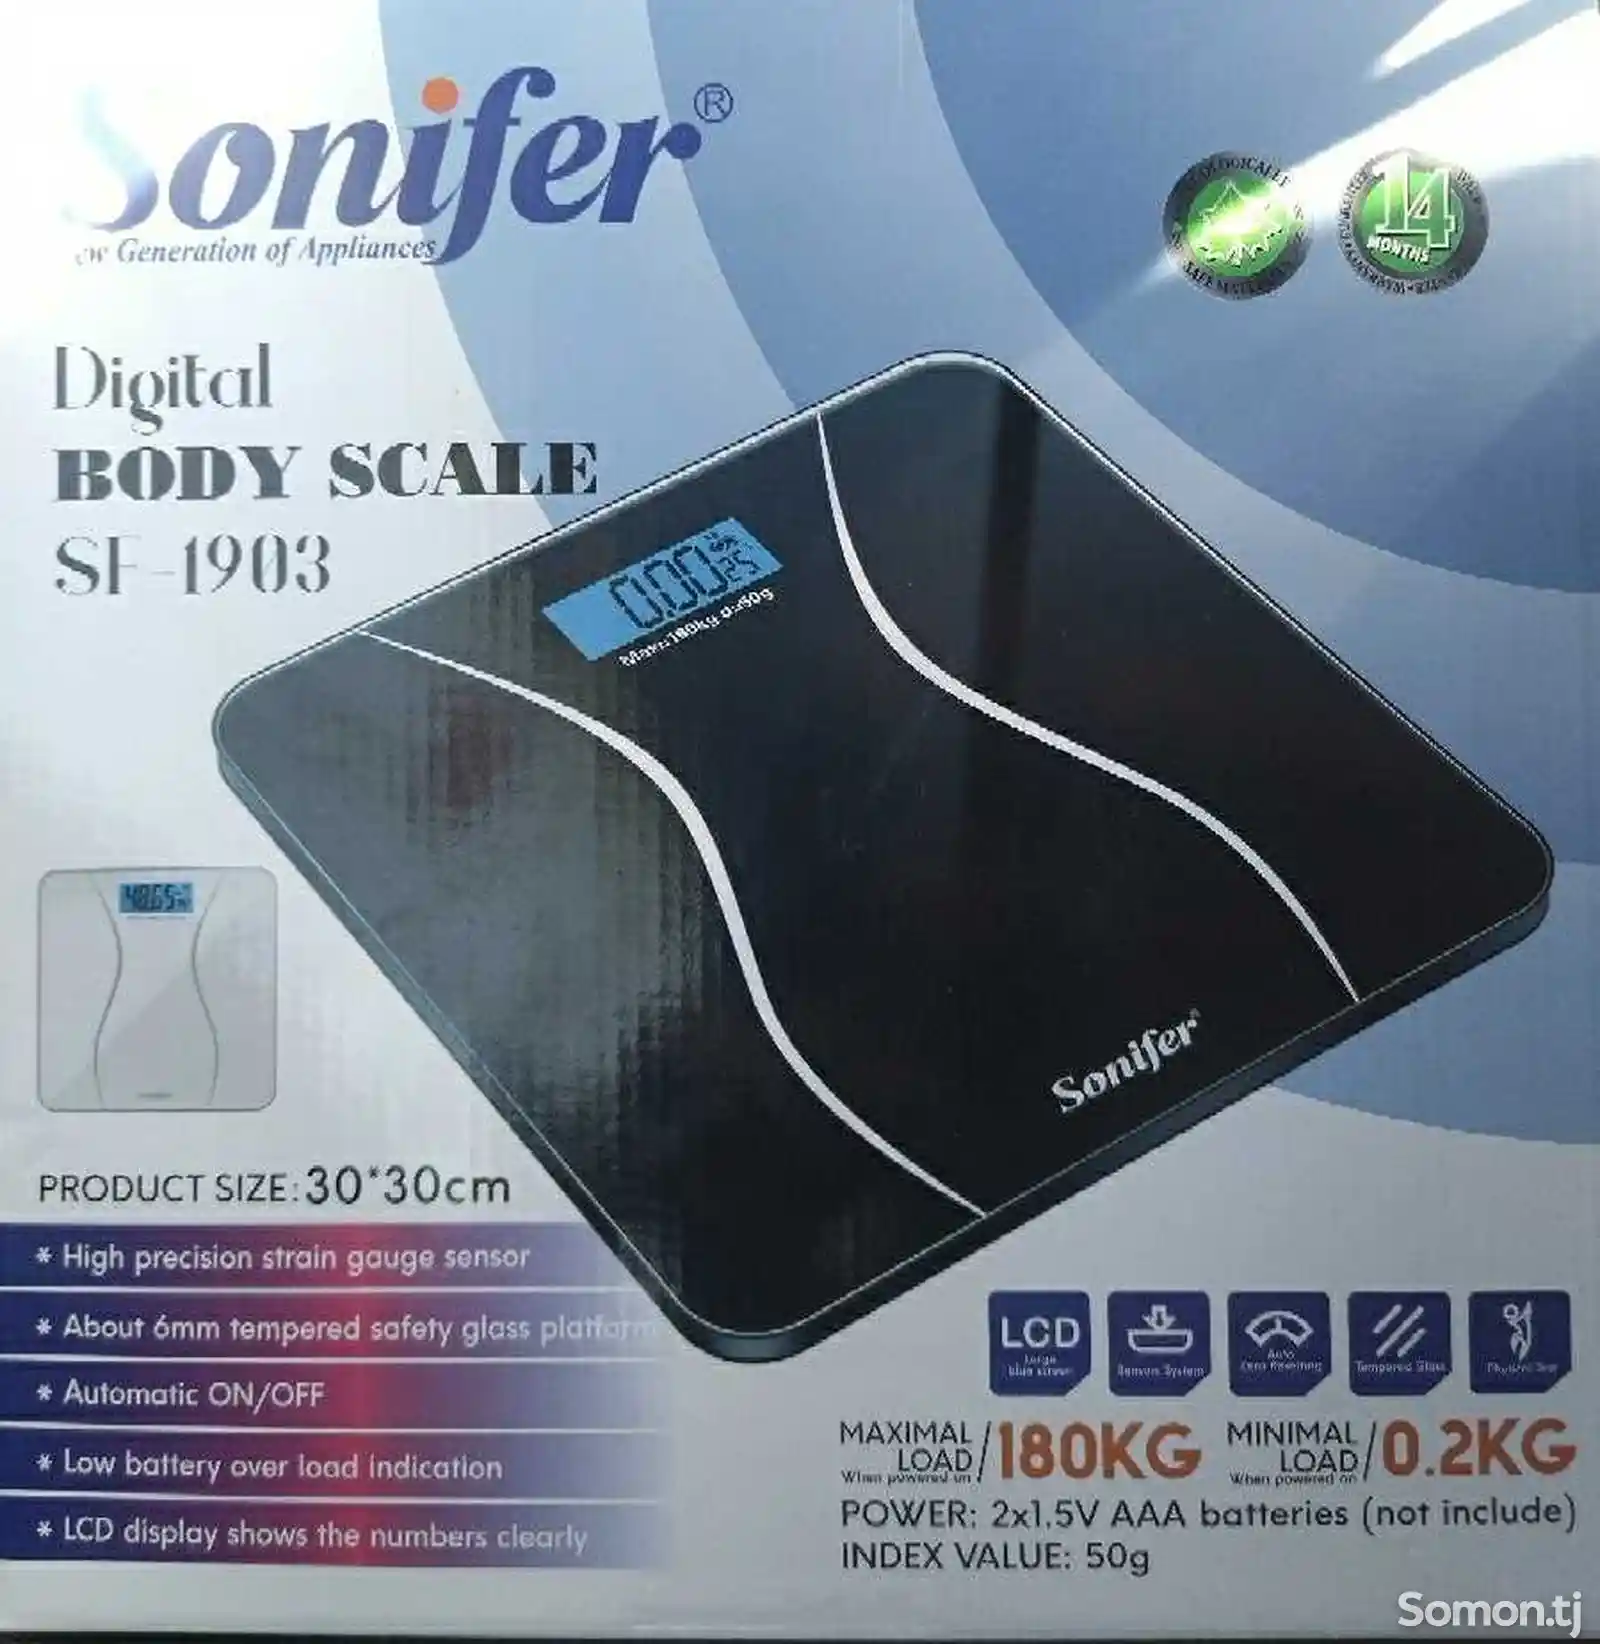 Весы Sonifer